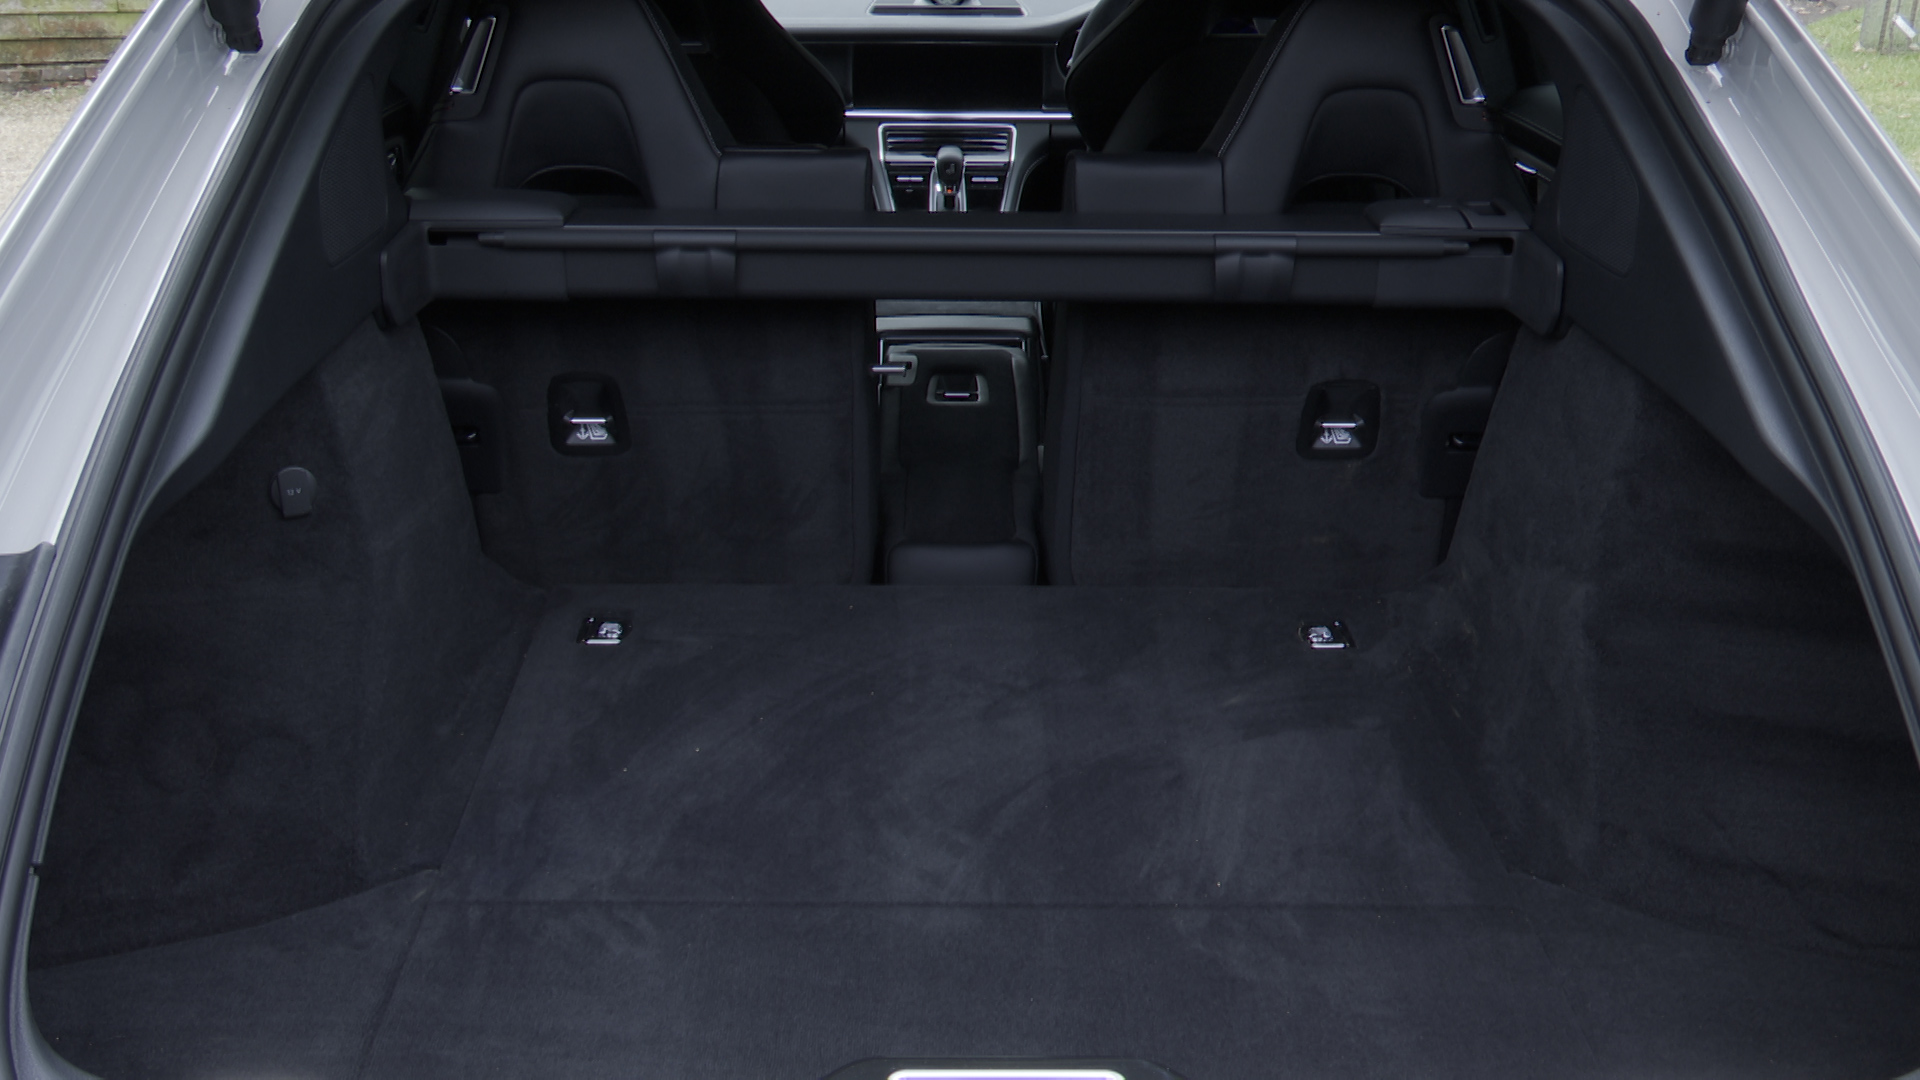 PORSCHE PANAMERA HATCHBACK 2.9 V6 4S E-Hybrid [5 seats] 5dr PDK